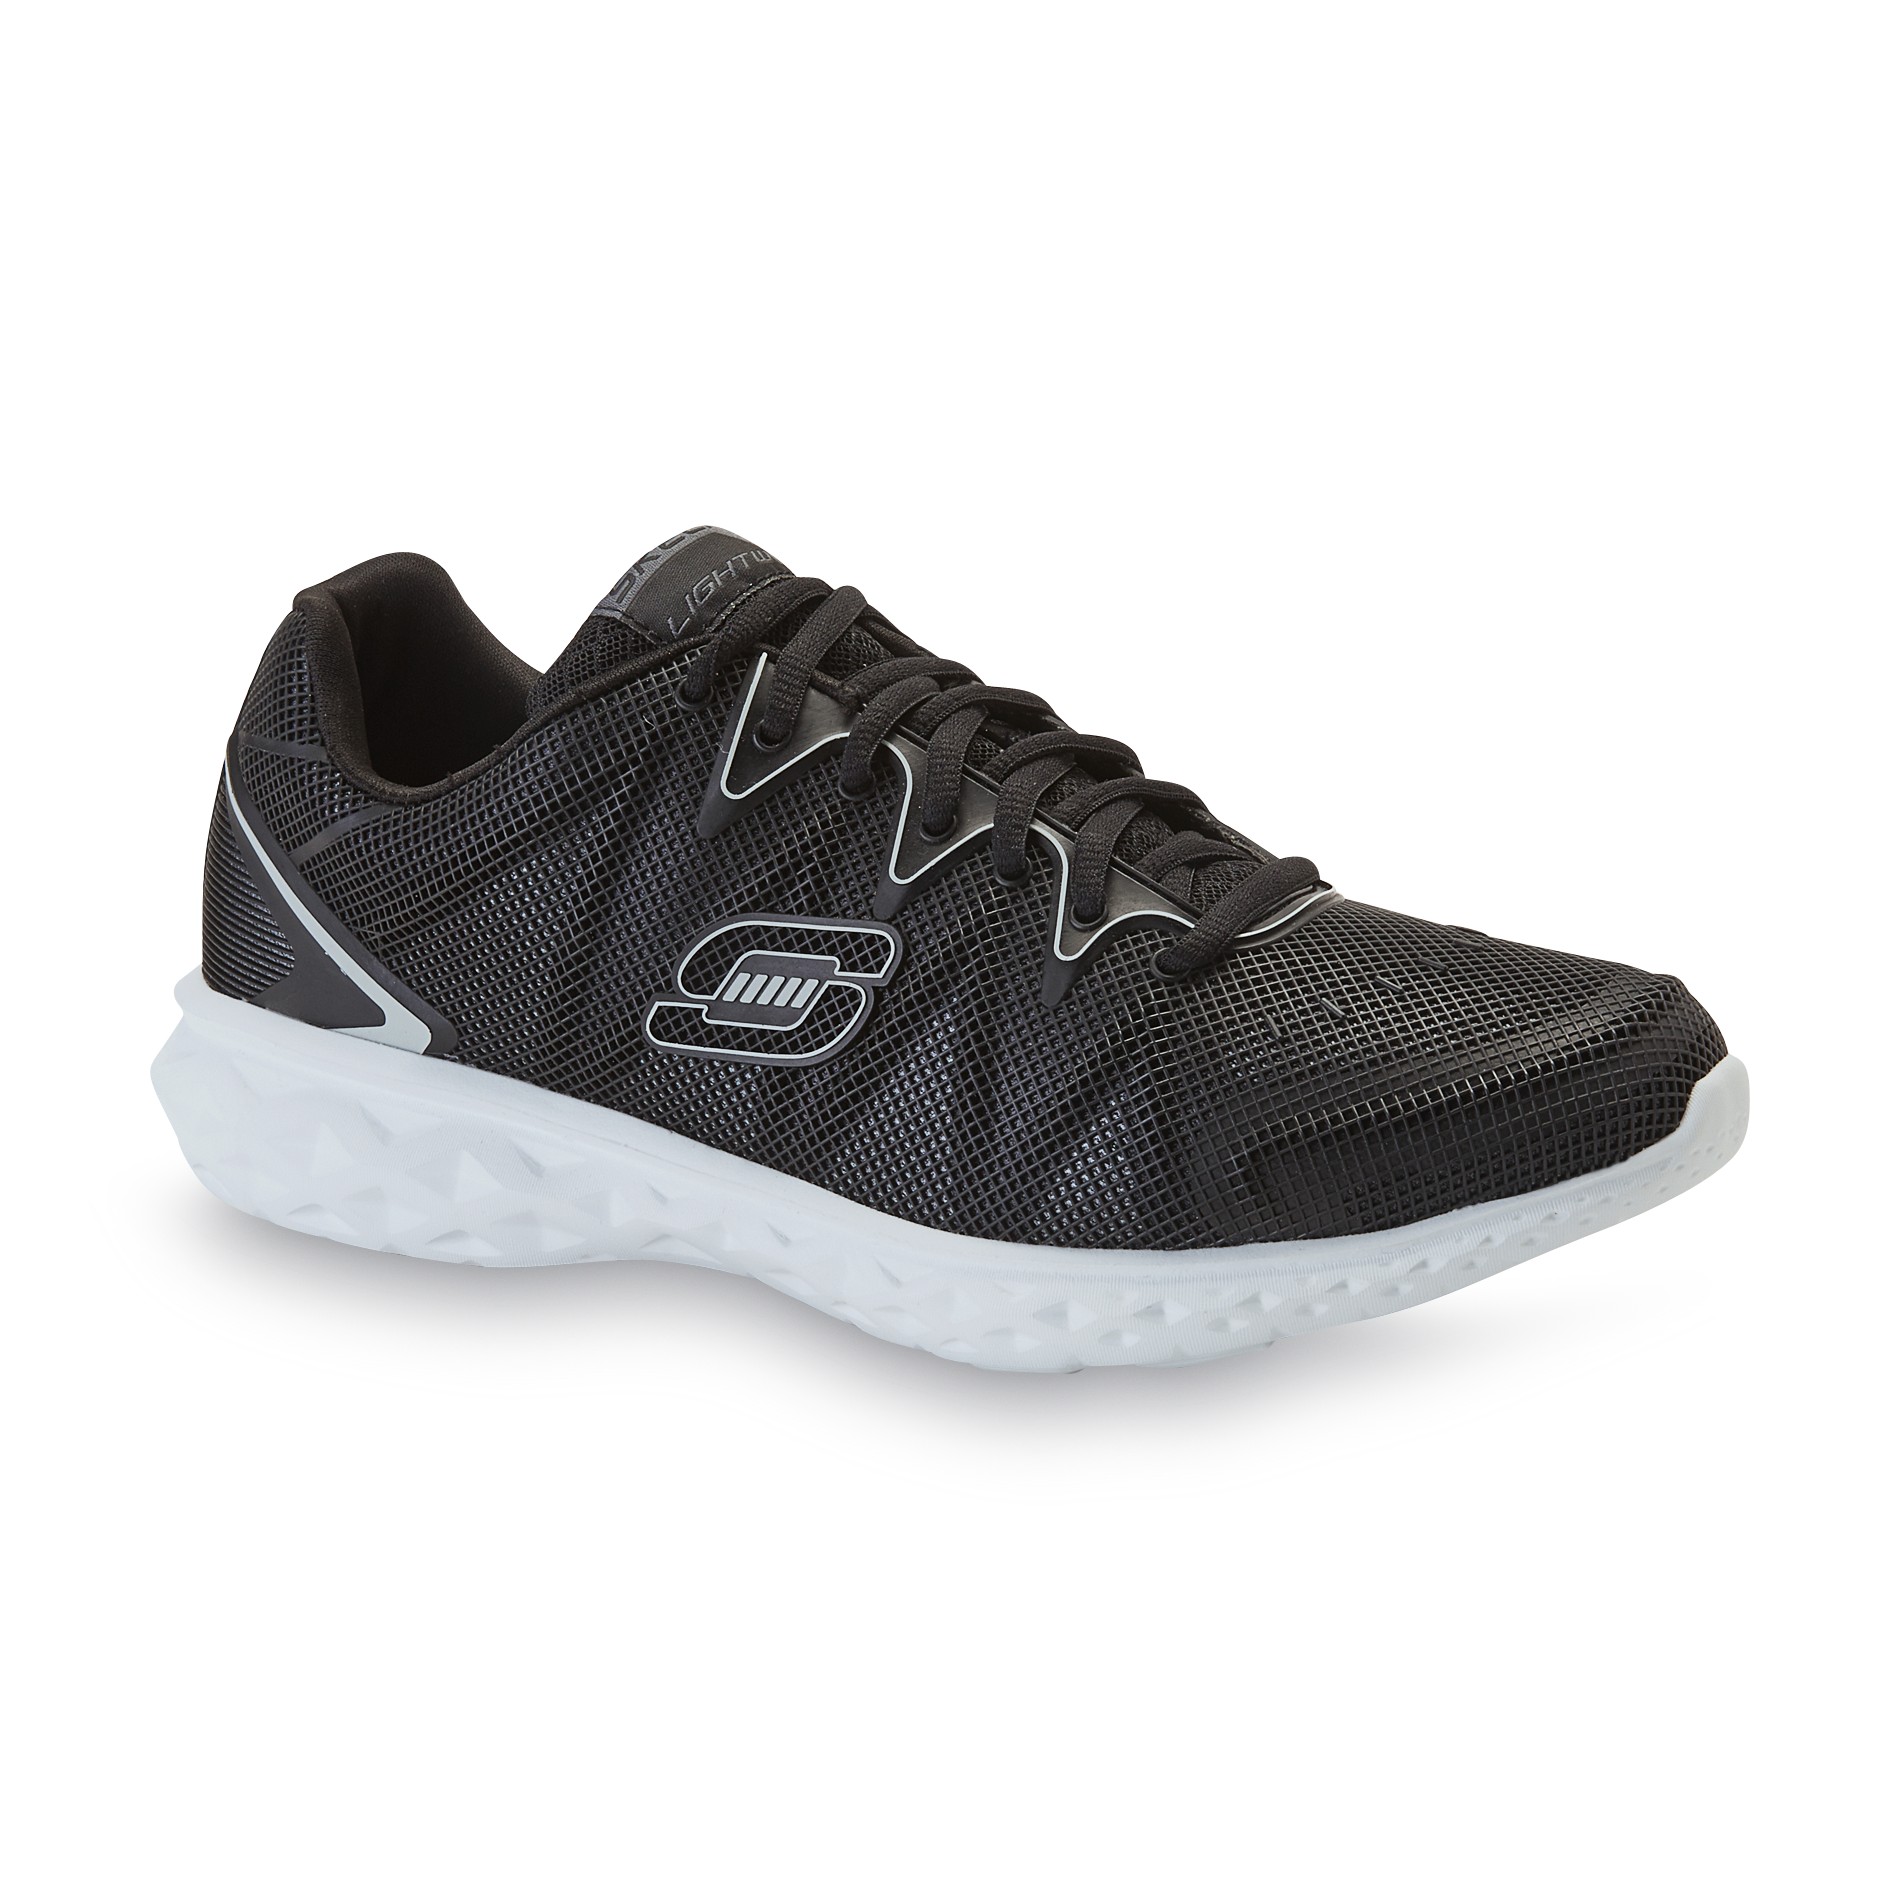 Skechers Men's Propulsion Black/White Running Shoe